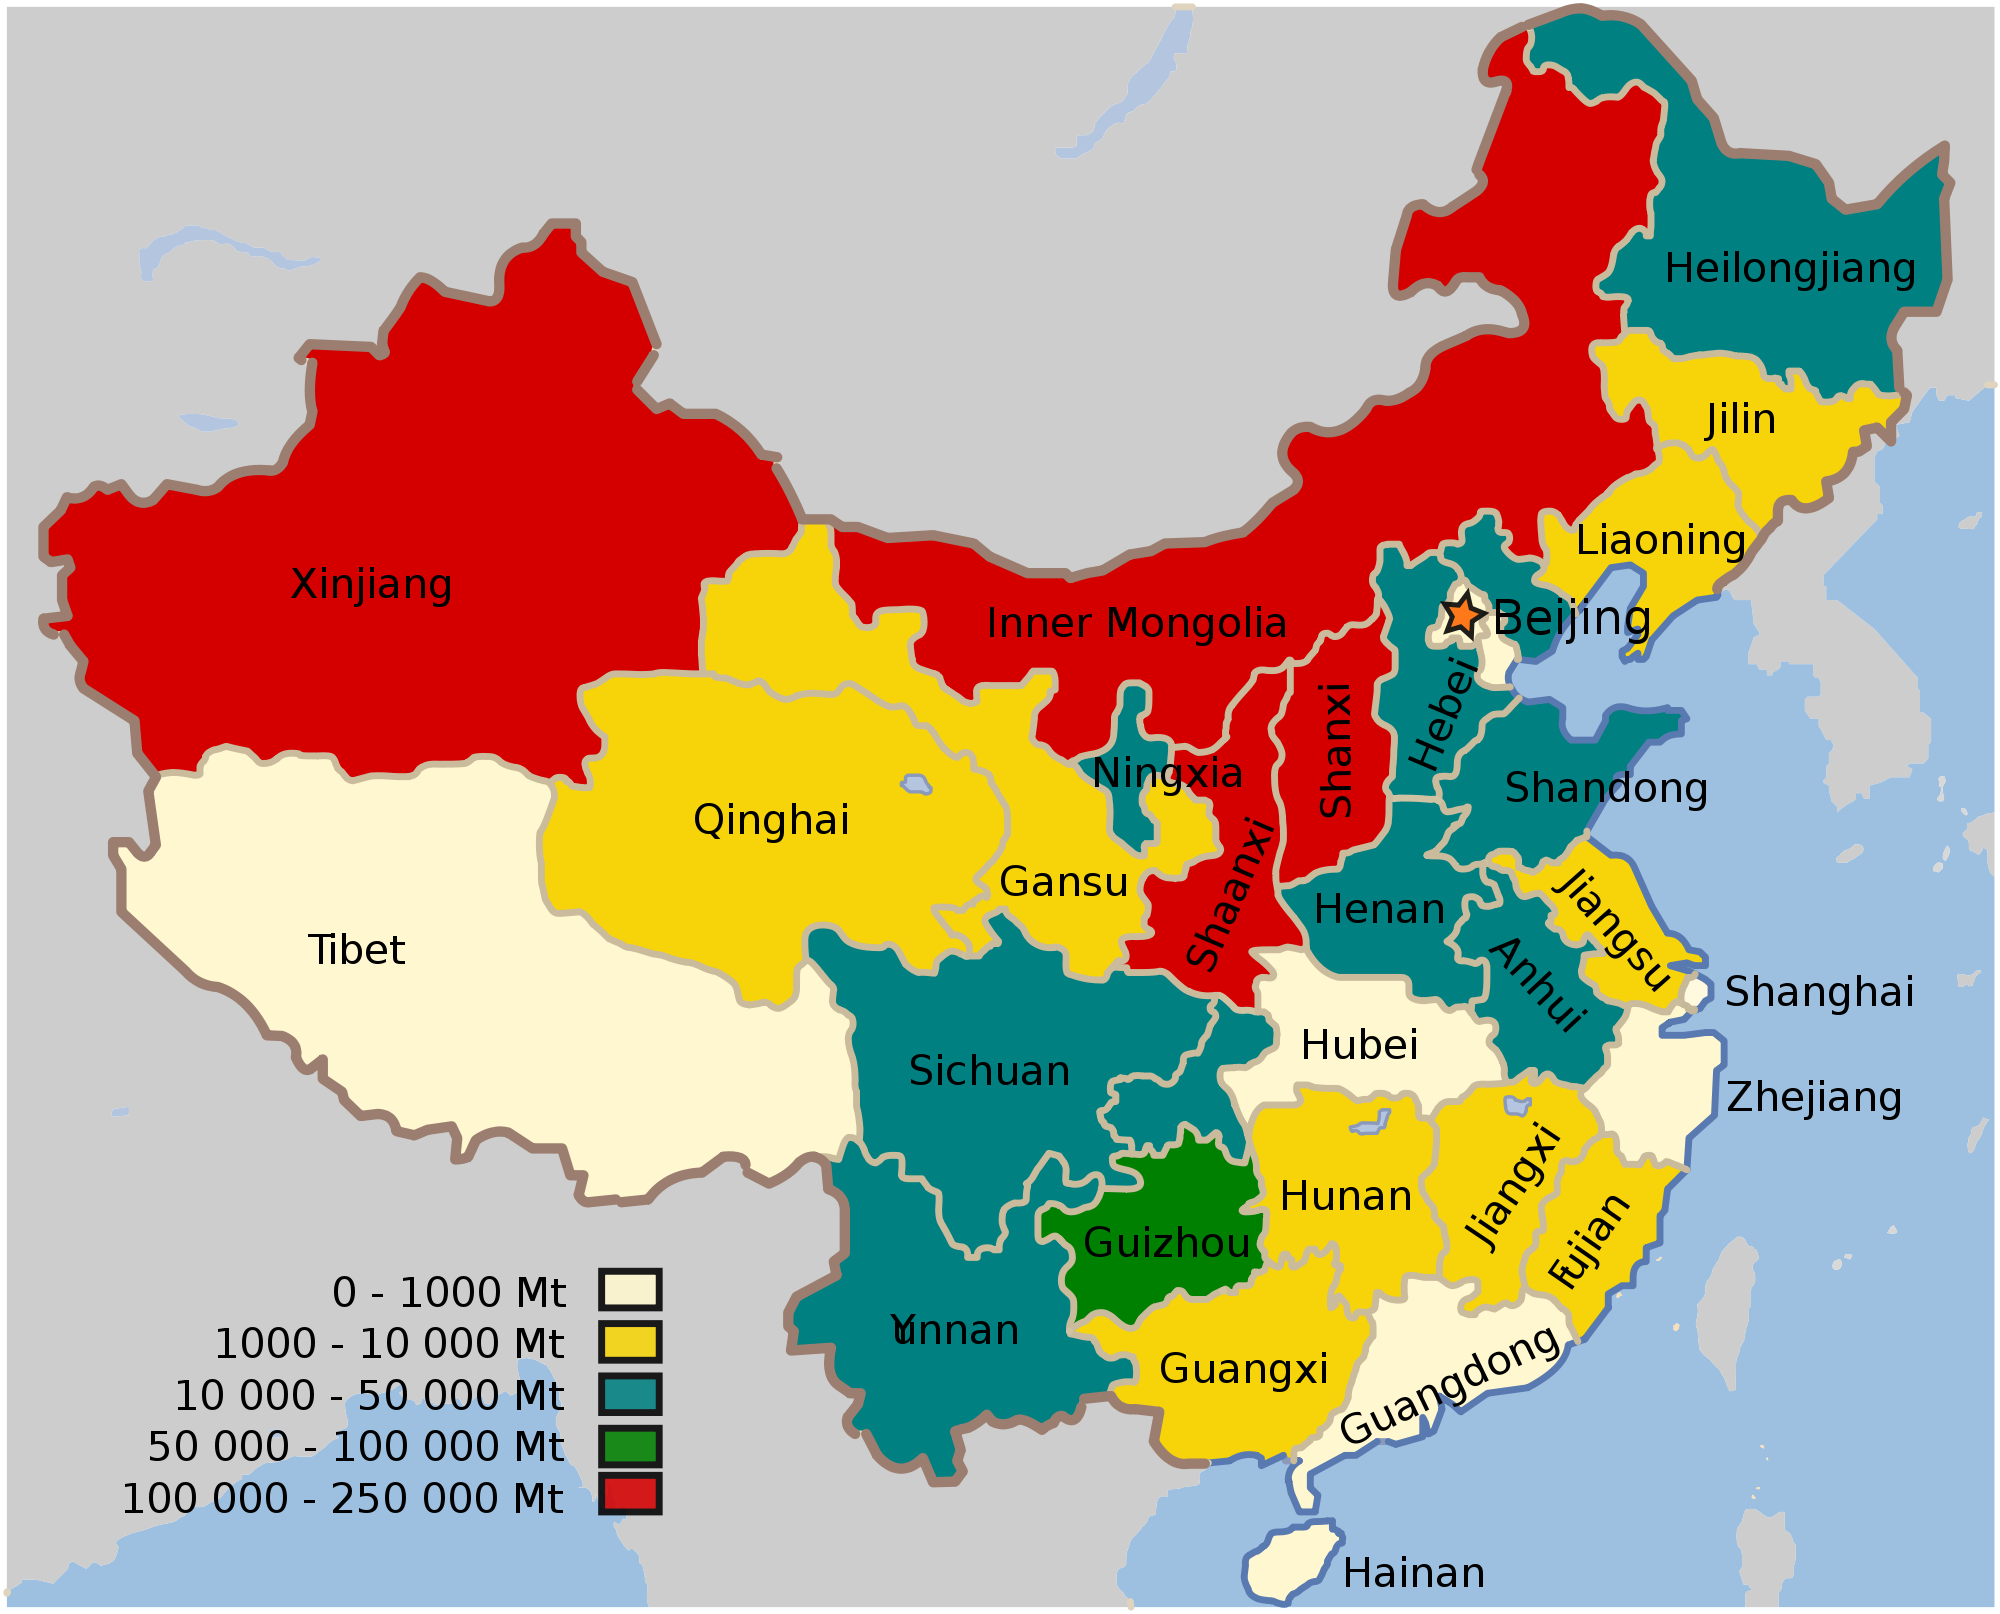 Map of china. Китай провинция Хубей на карте. Карта Китая с провинциями. Китай деление на провинции. Adminstrativnoe deleniye kitay.